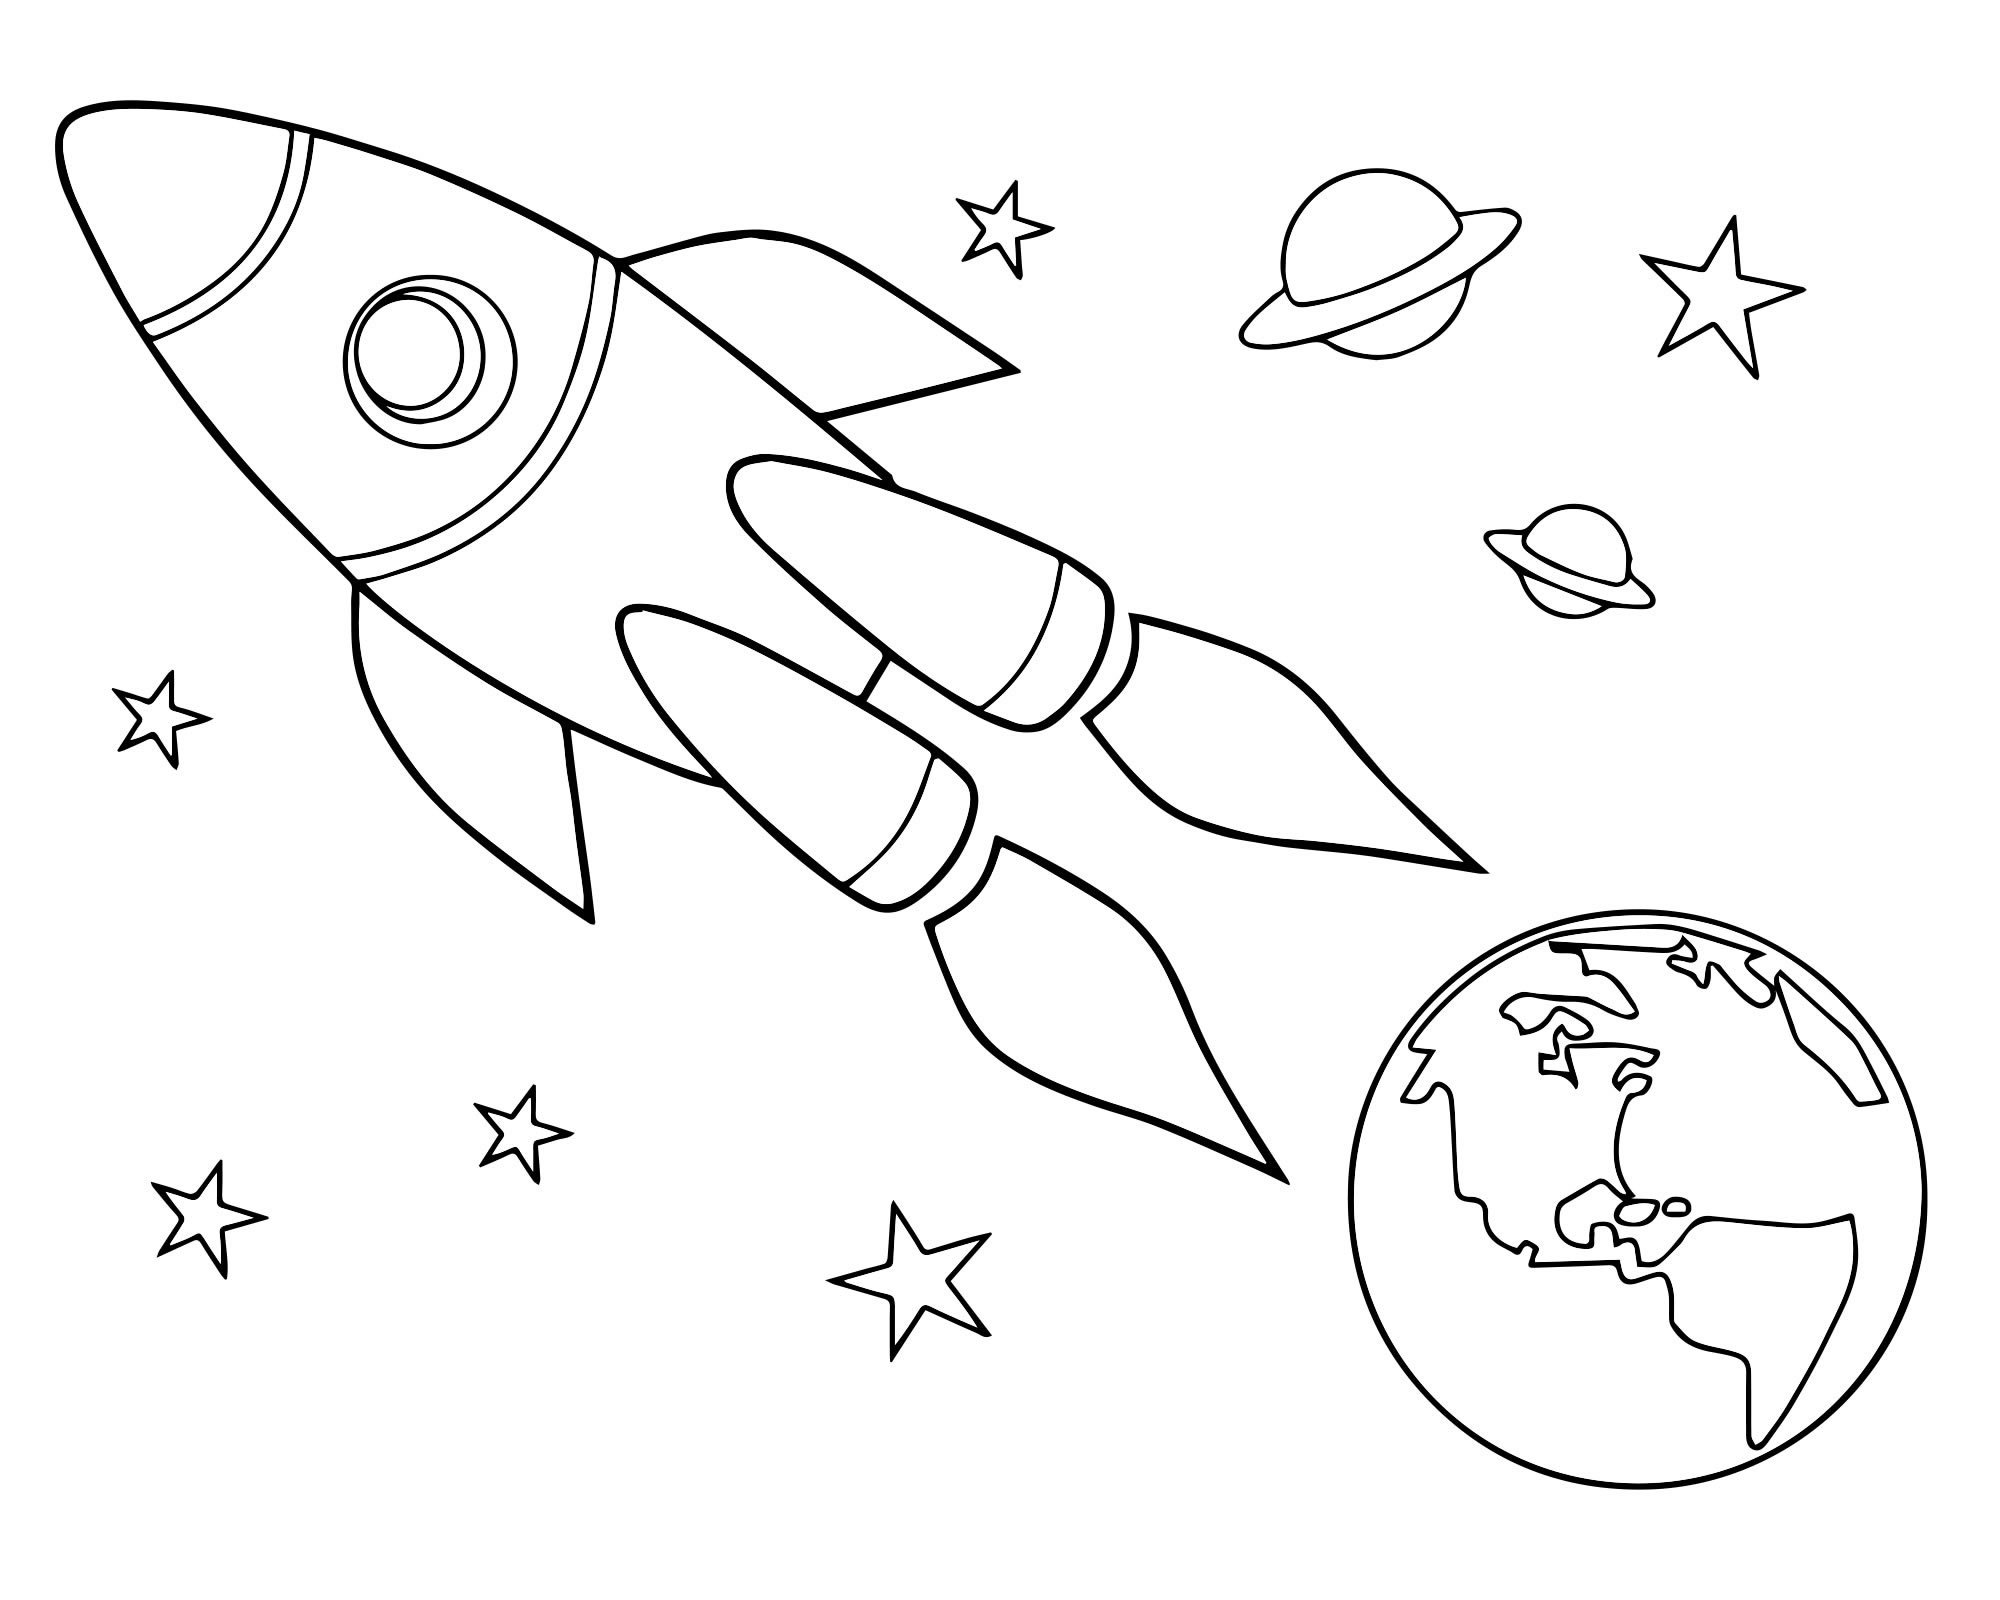 Космос раскраска для детей. Раскраска день космонавтики для детей. Трафареты на тему космоса для детей. Раскраска для малышей. Космос.